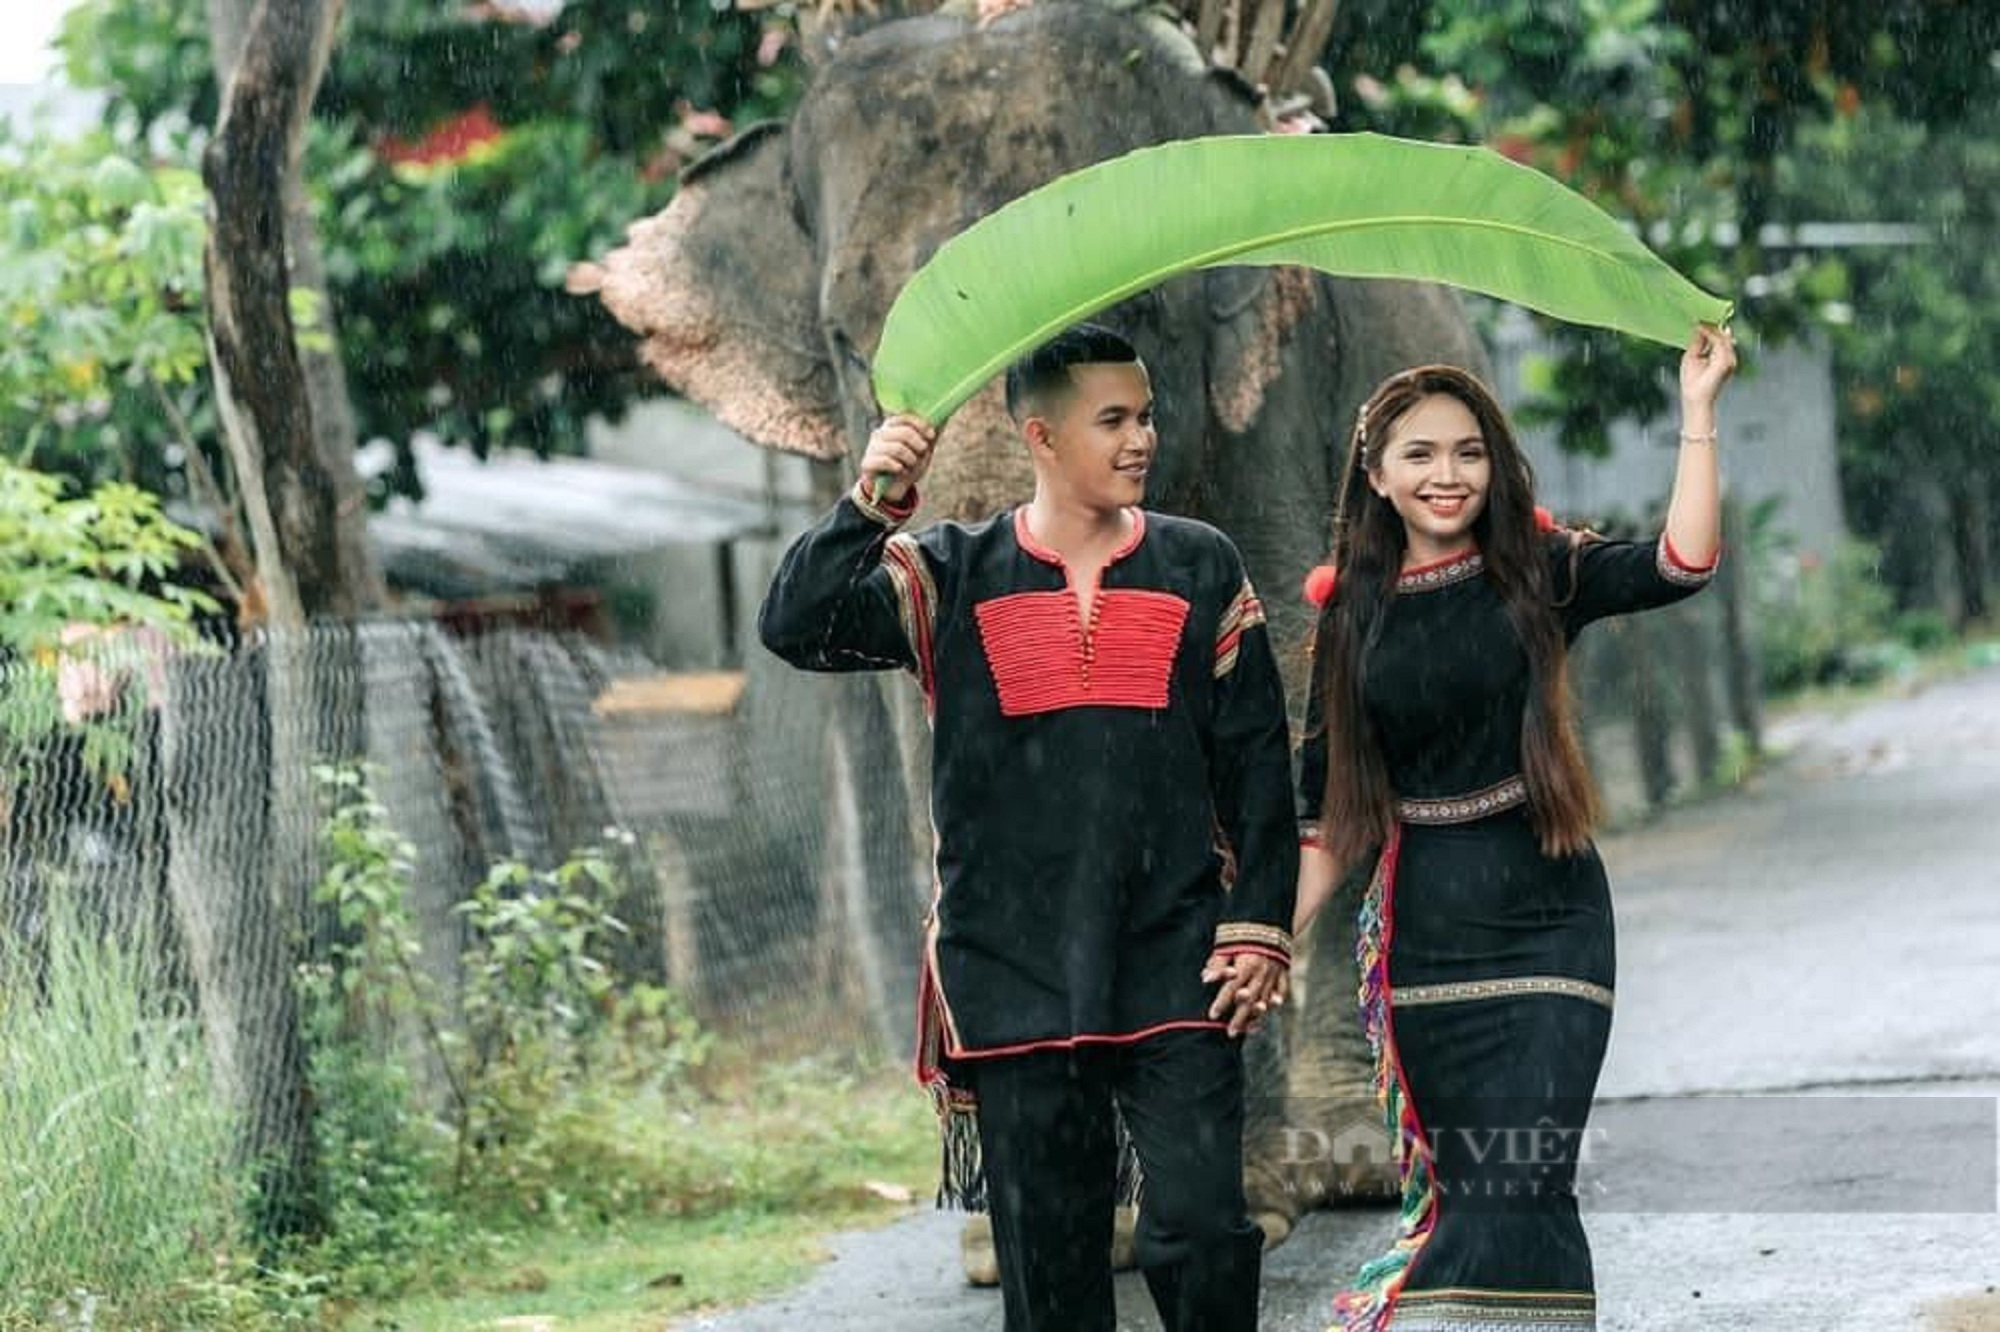 Trang phục truyền thống: Dù là áo dài hay bao bồi, trang phục Truyền thống luôn mang đến sự trang trọng và tình cảm văn hóa đặc trưng của mỗi dân tộc. Khám phá những hình ảnh đẹp mắt về trang phục truyền thống và sự đa dạng của nền văn hóa Việt Nam.